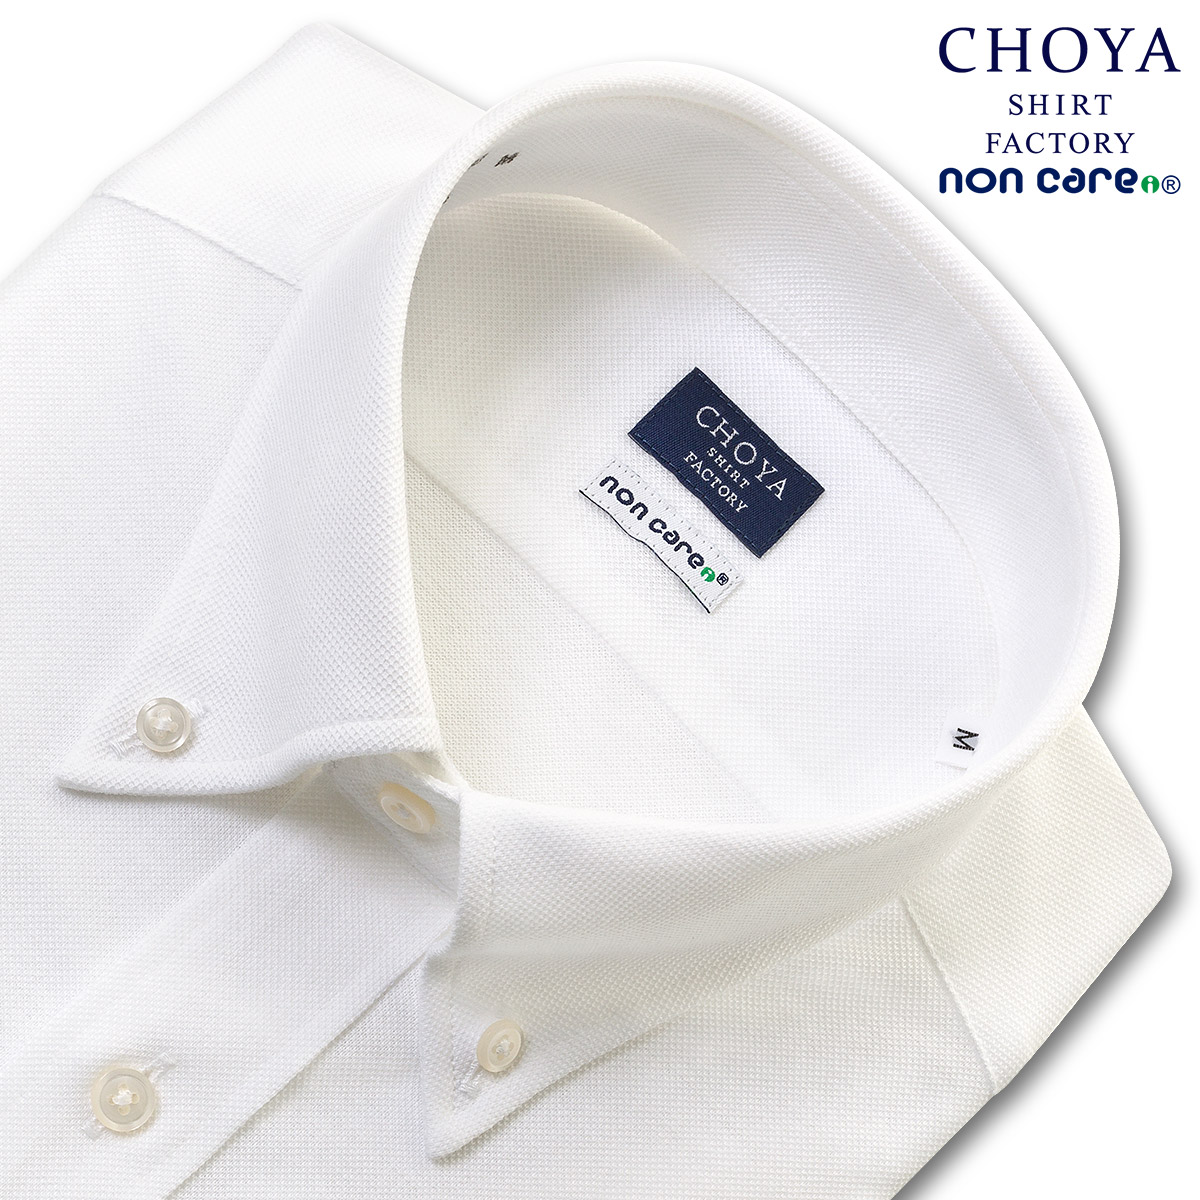 当店大人気ブランドからニットシャツがデビュー CHOYA SHIRT FACTORY 在庫一掃 ノンケア 日本最大級の品揃え ニット 鹿の子ニット 長袖 ニットシャツ ボタンダウン 綿：100% ホワイト 2109ft 2109de 高機能形態安定加工 ワイシャツ 白